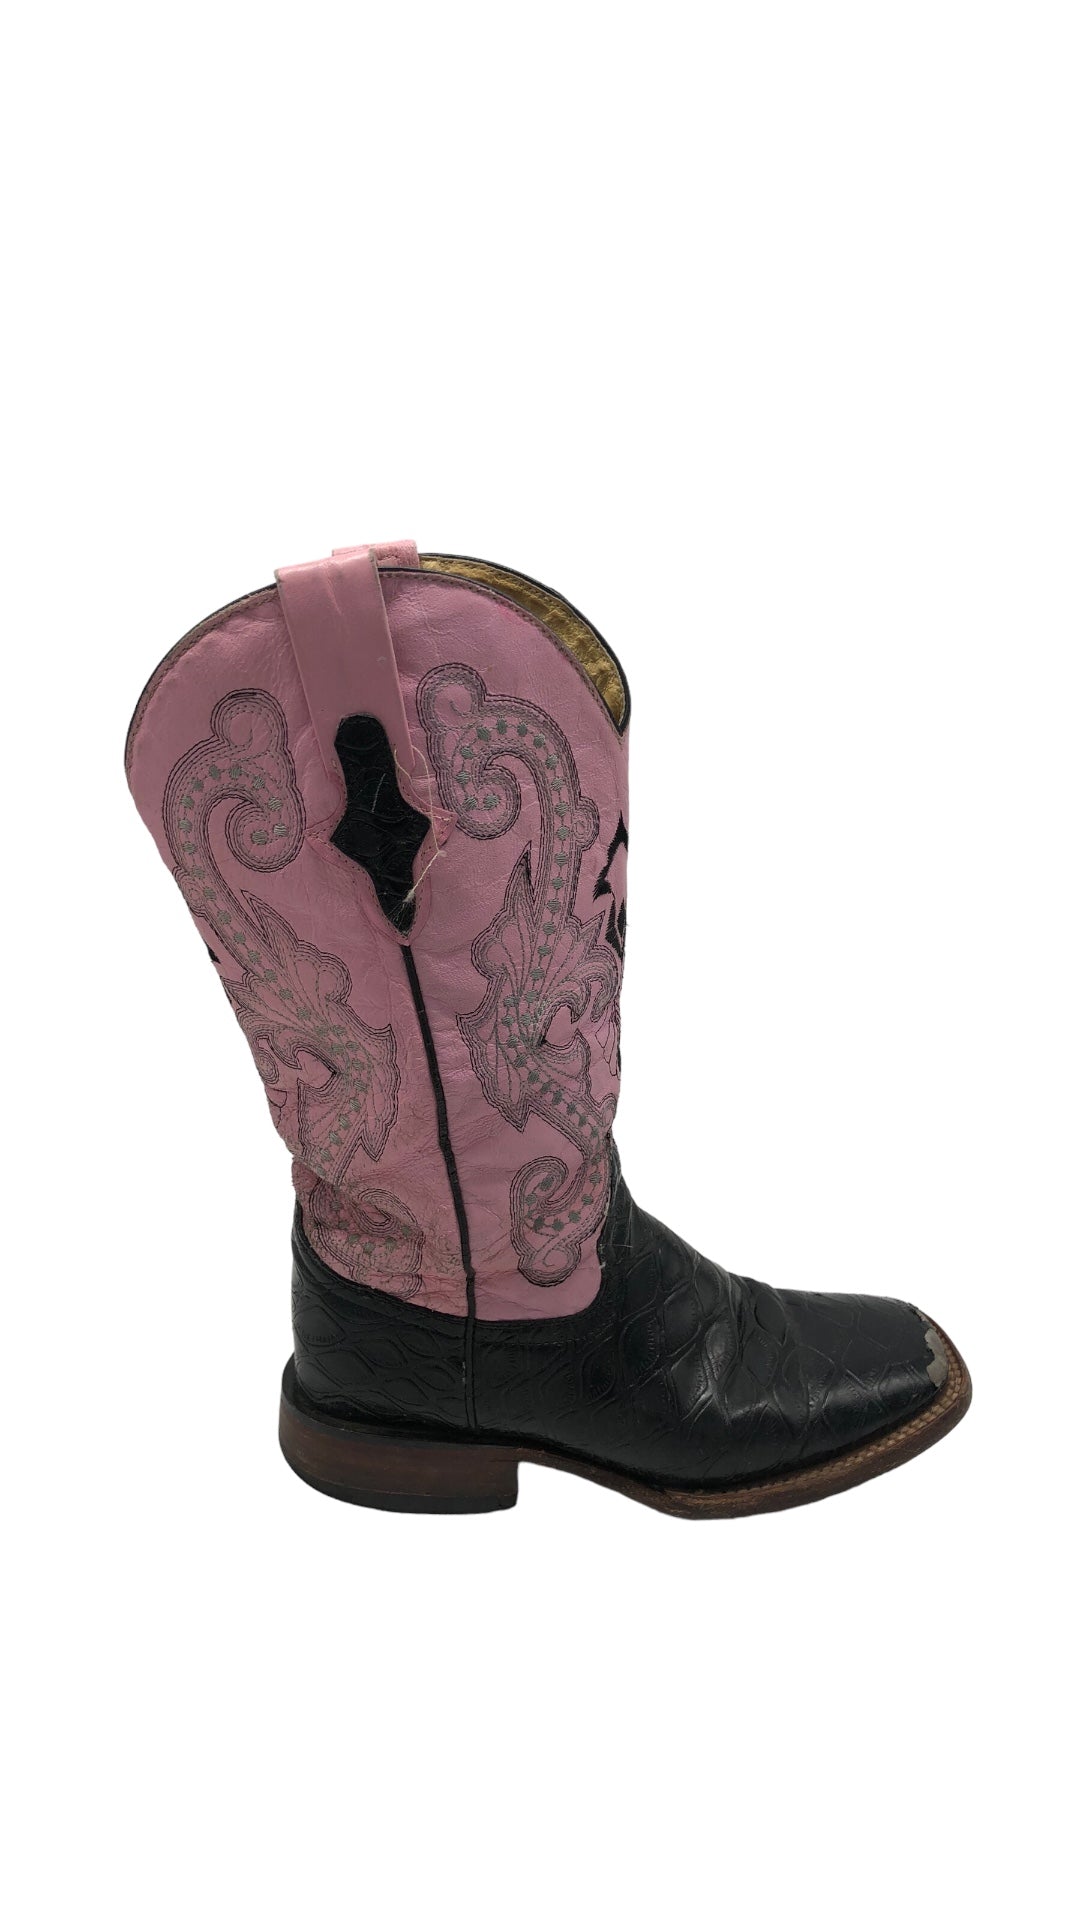 Ferrini Pink Square Toe Cowboy Boots Sz 6W